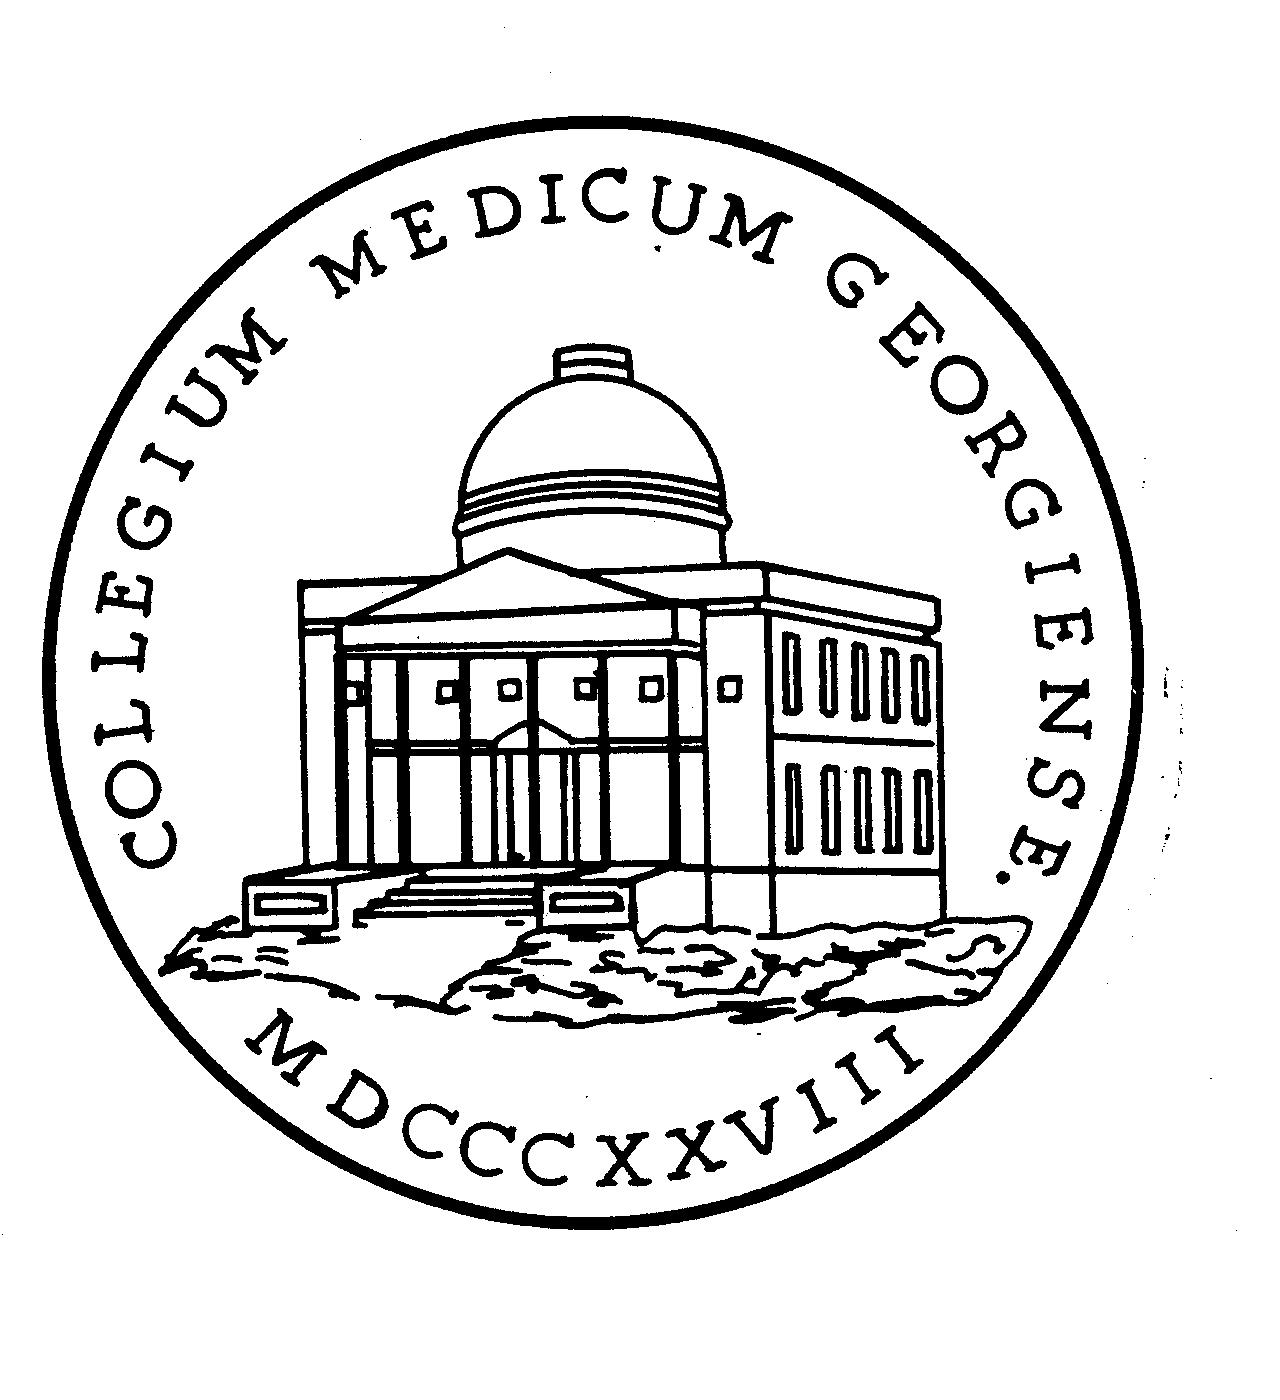  COLLEGIUM MEDICUM GEORGIENSE MDCCCXXVIII